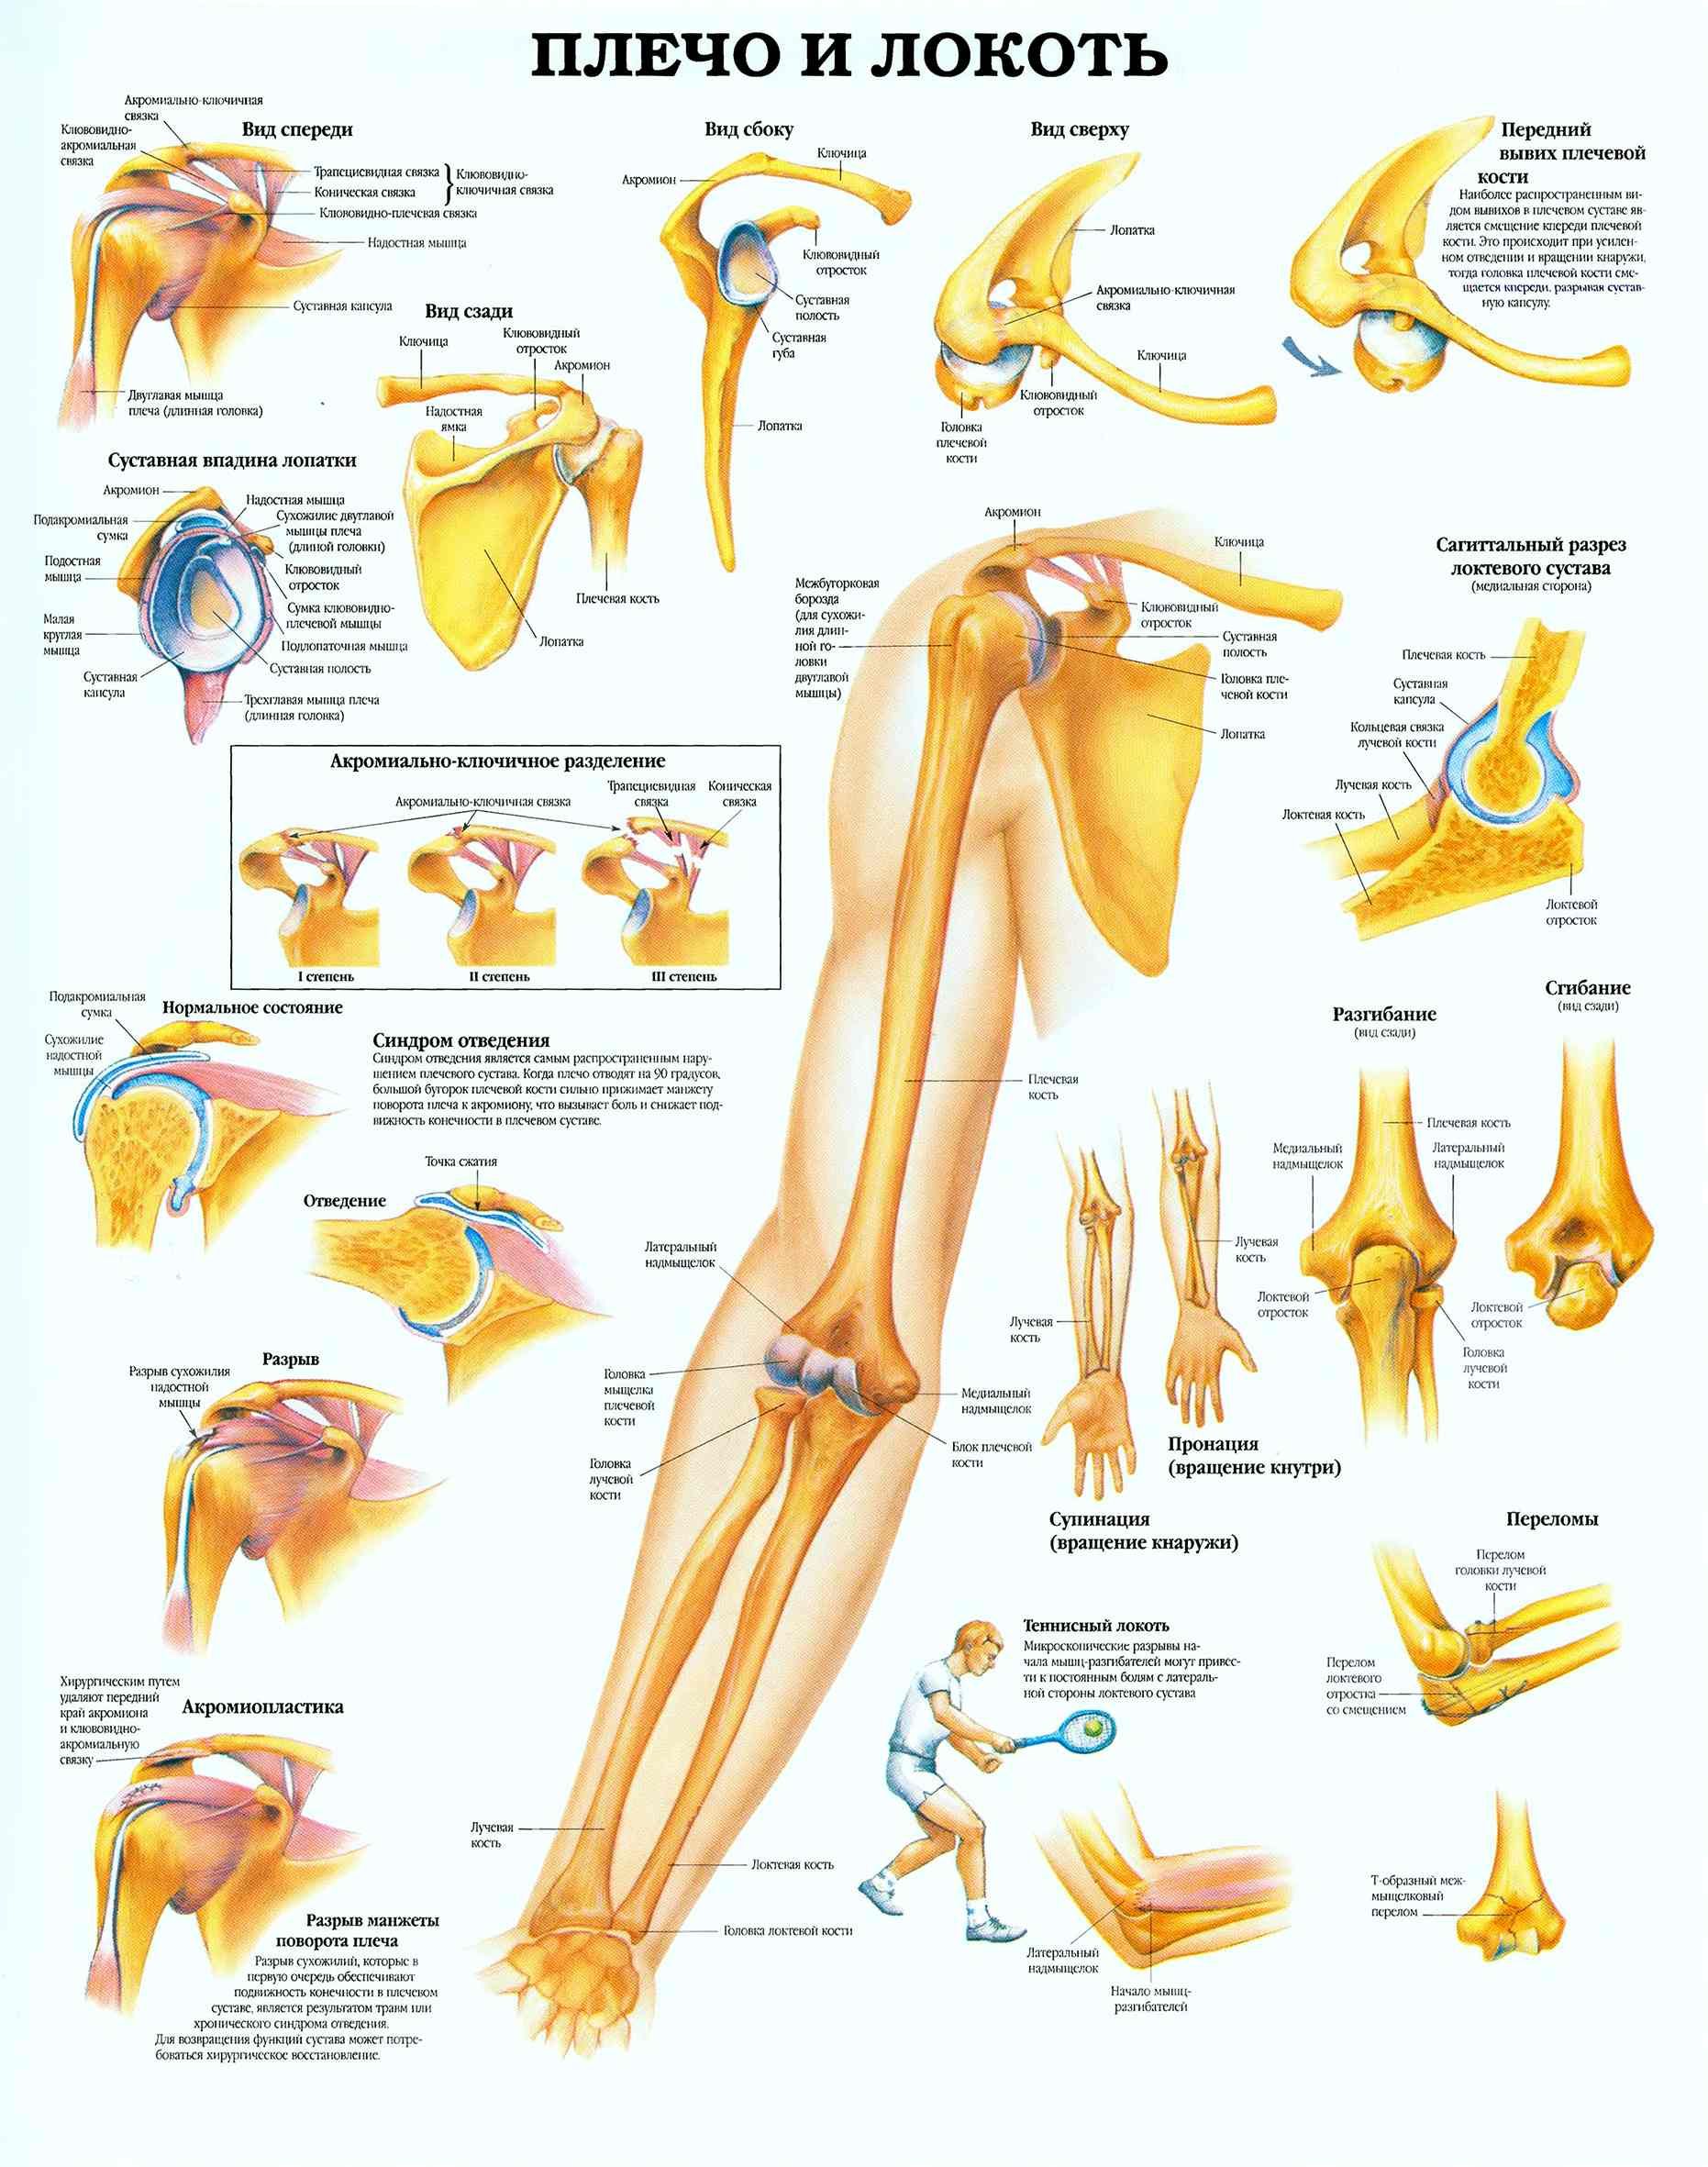 Анатомия локтевого сустава человека